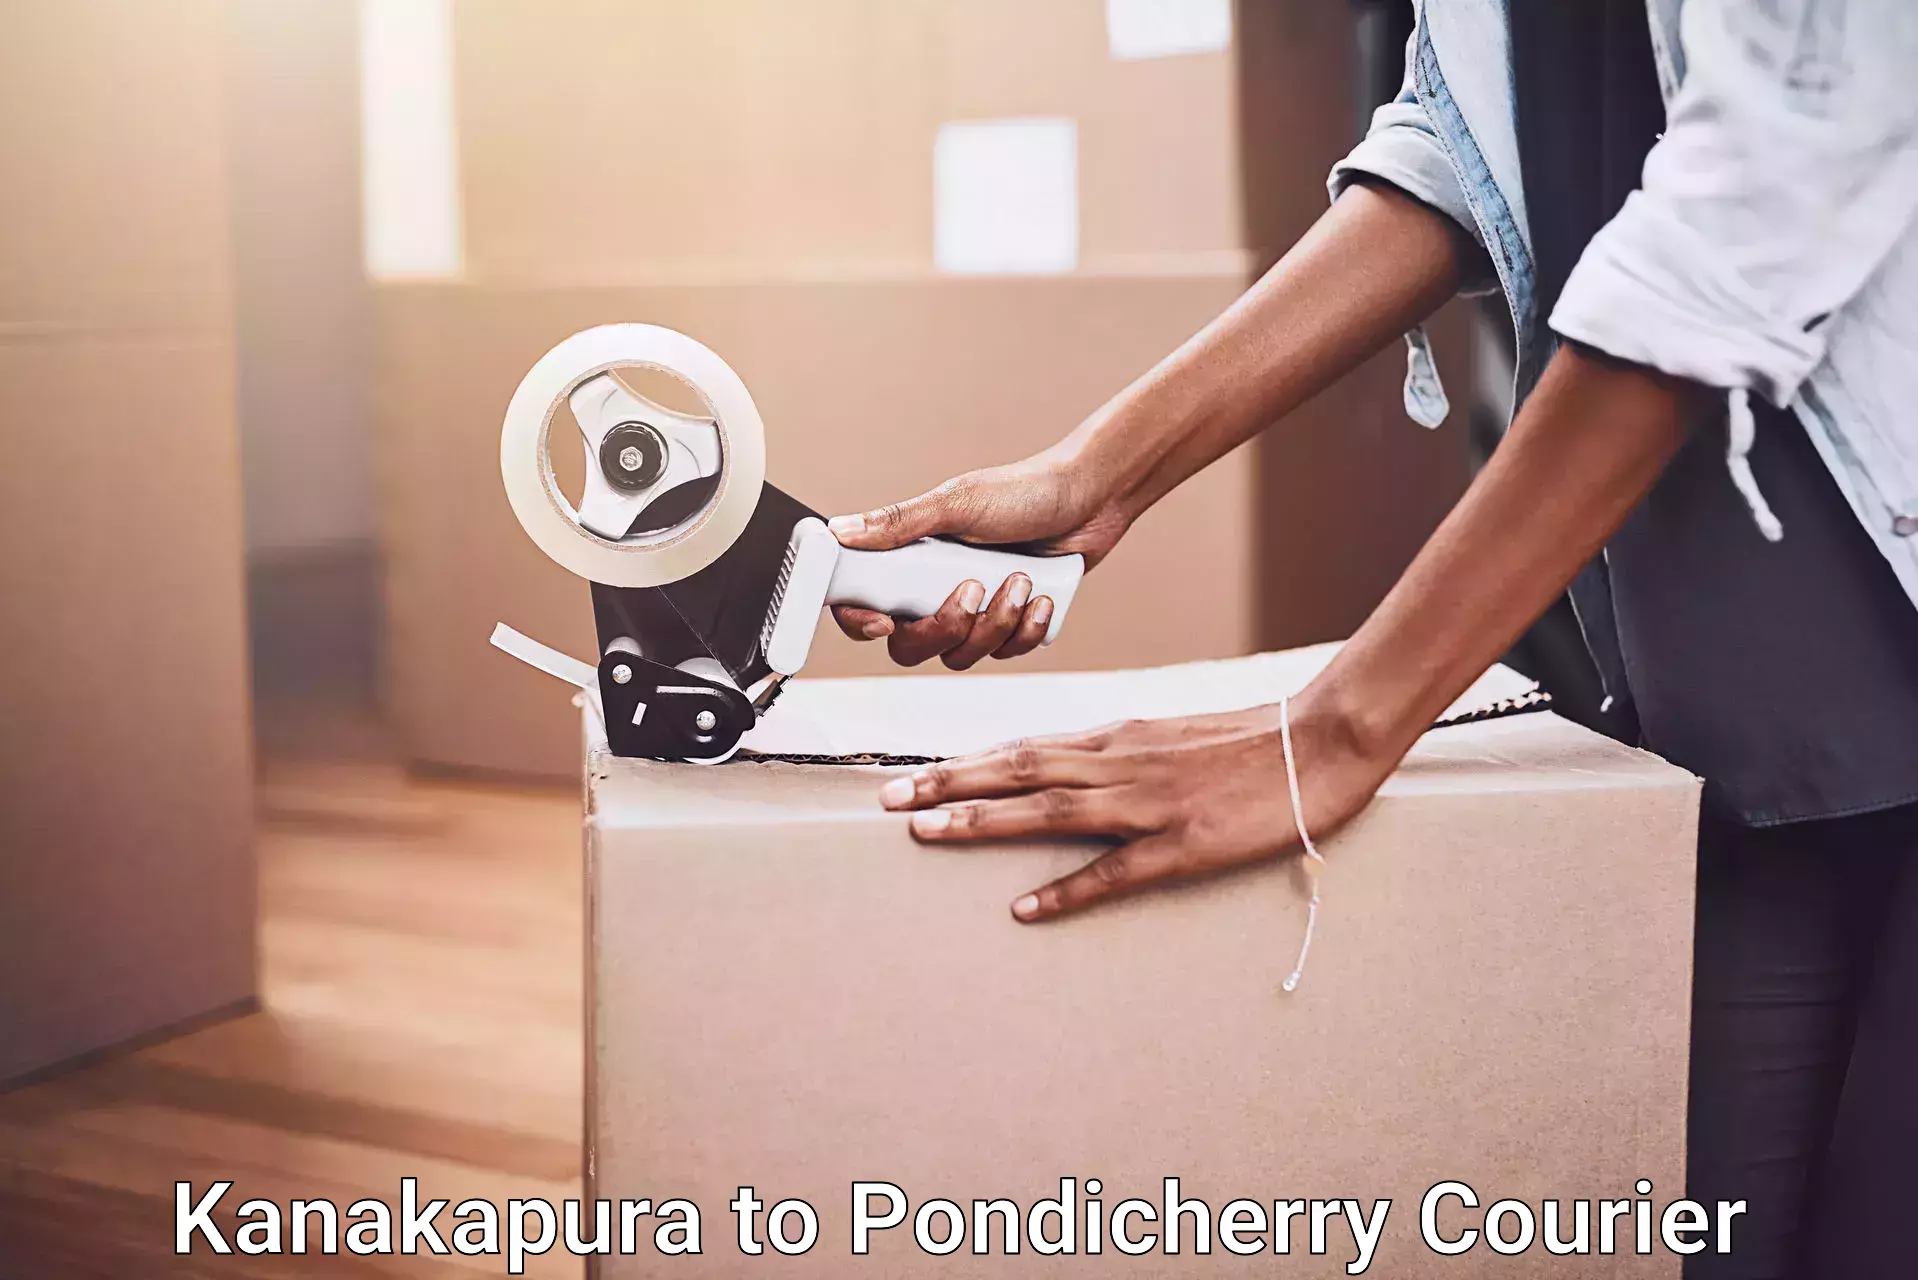 Home relocation experts Kanakapura to Pondicherry